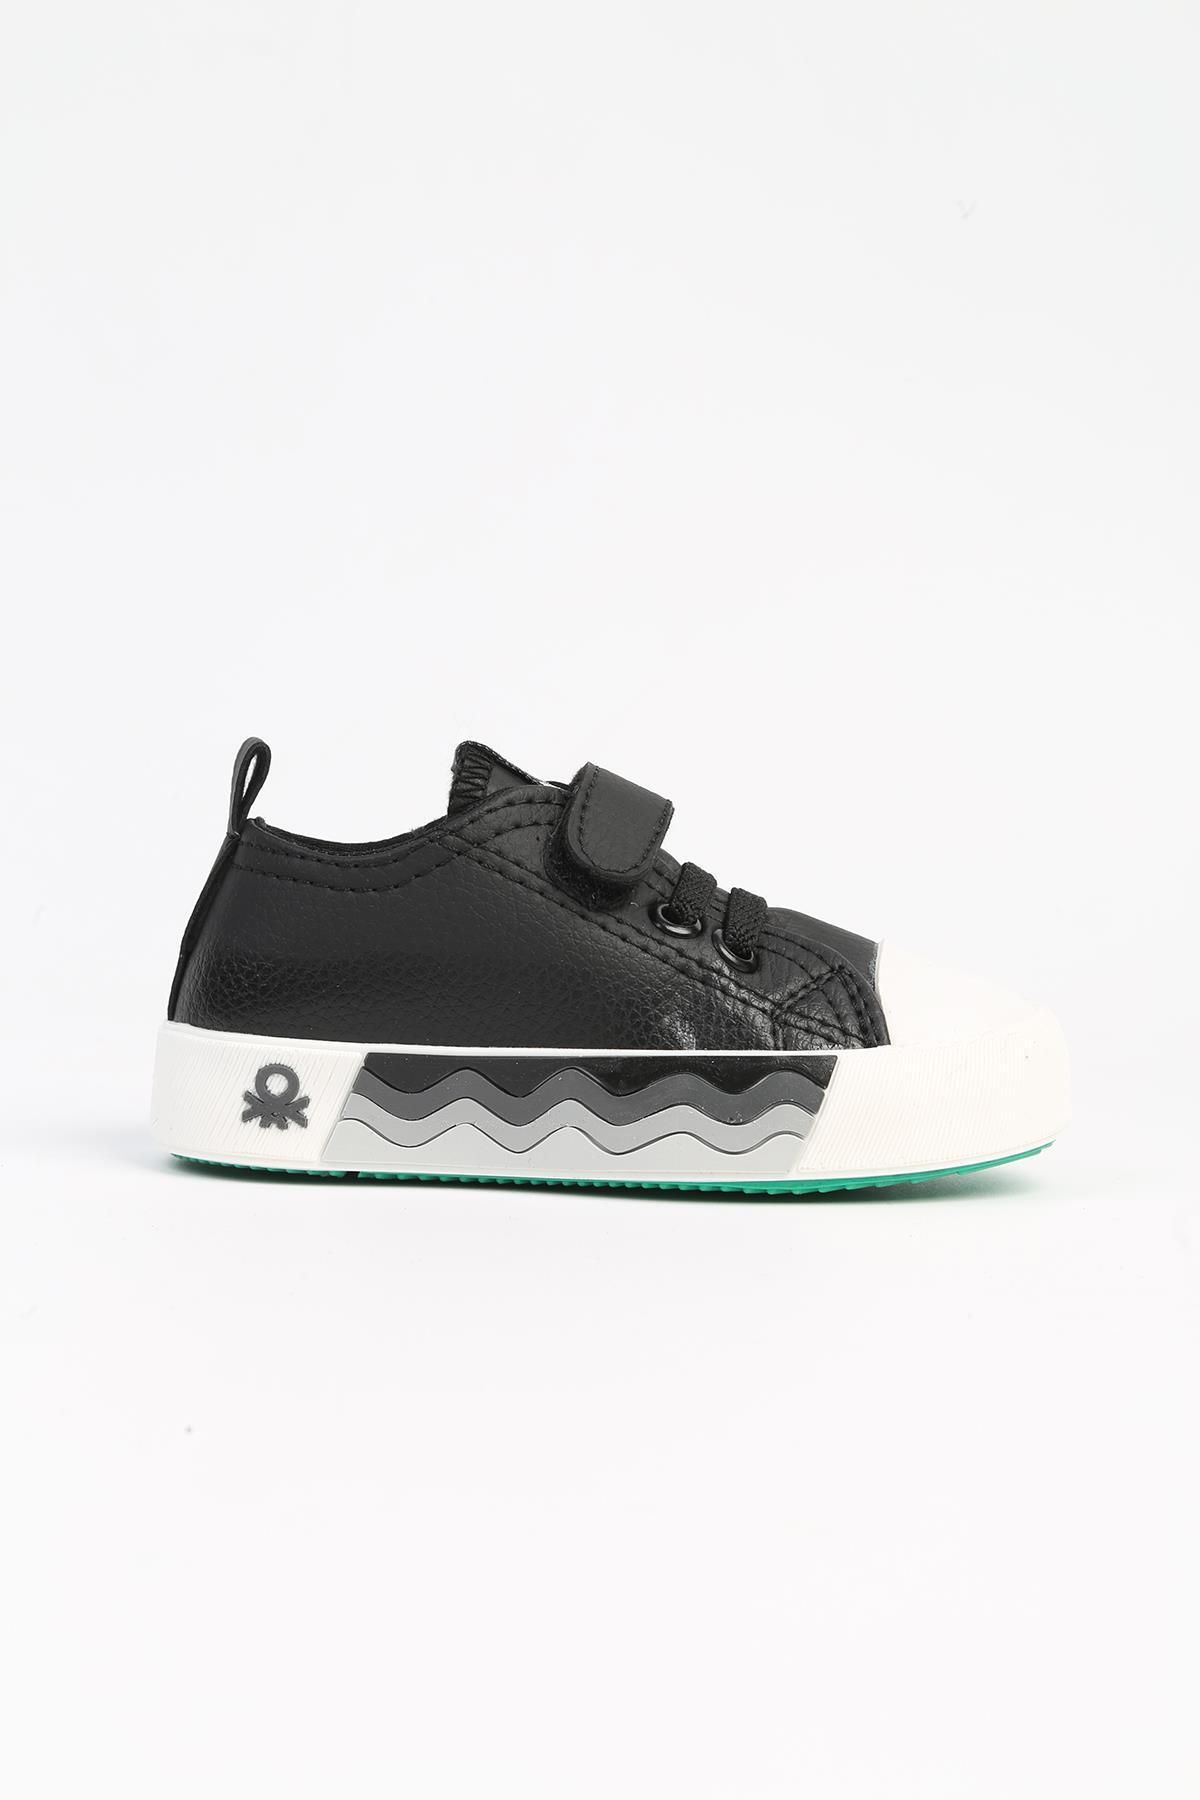 Benetton ® | BN-31136 - 3394 Siyah Beyaz - Çocuk Spor Ayakkabı